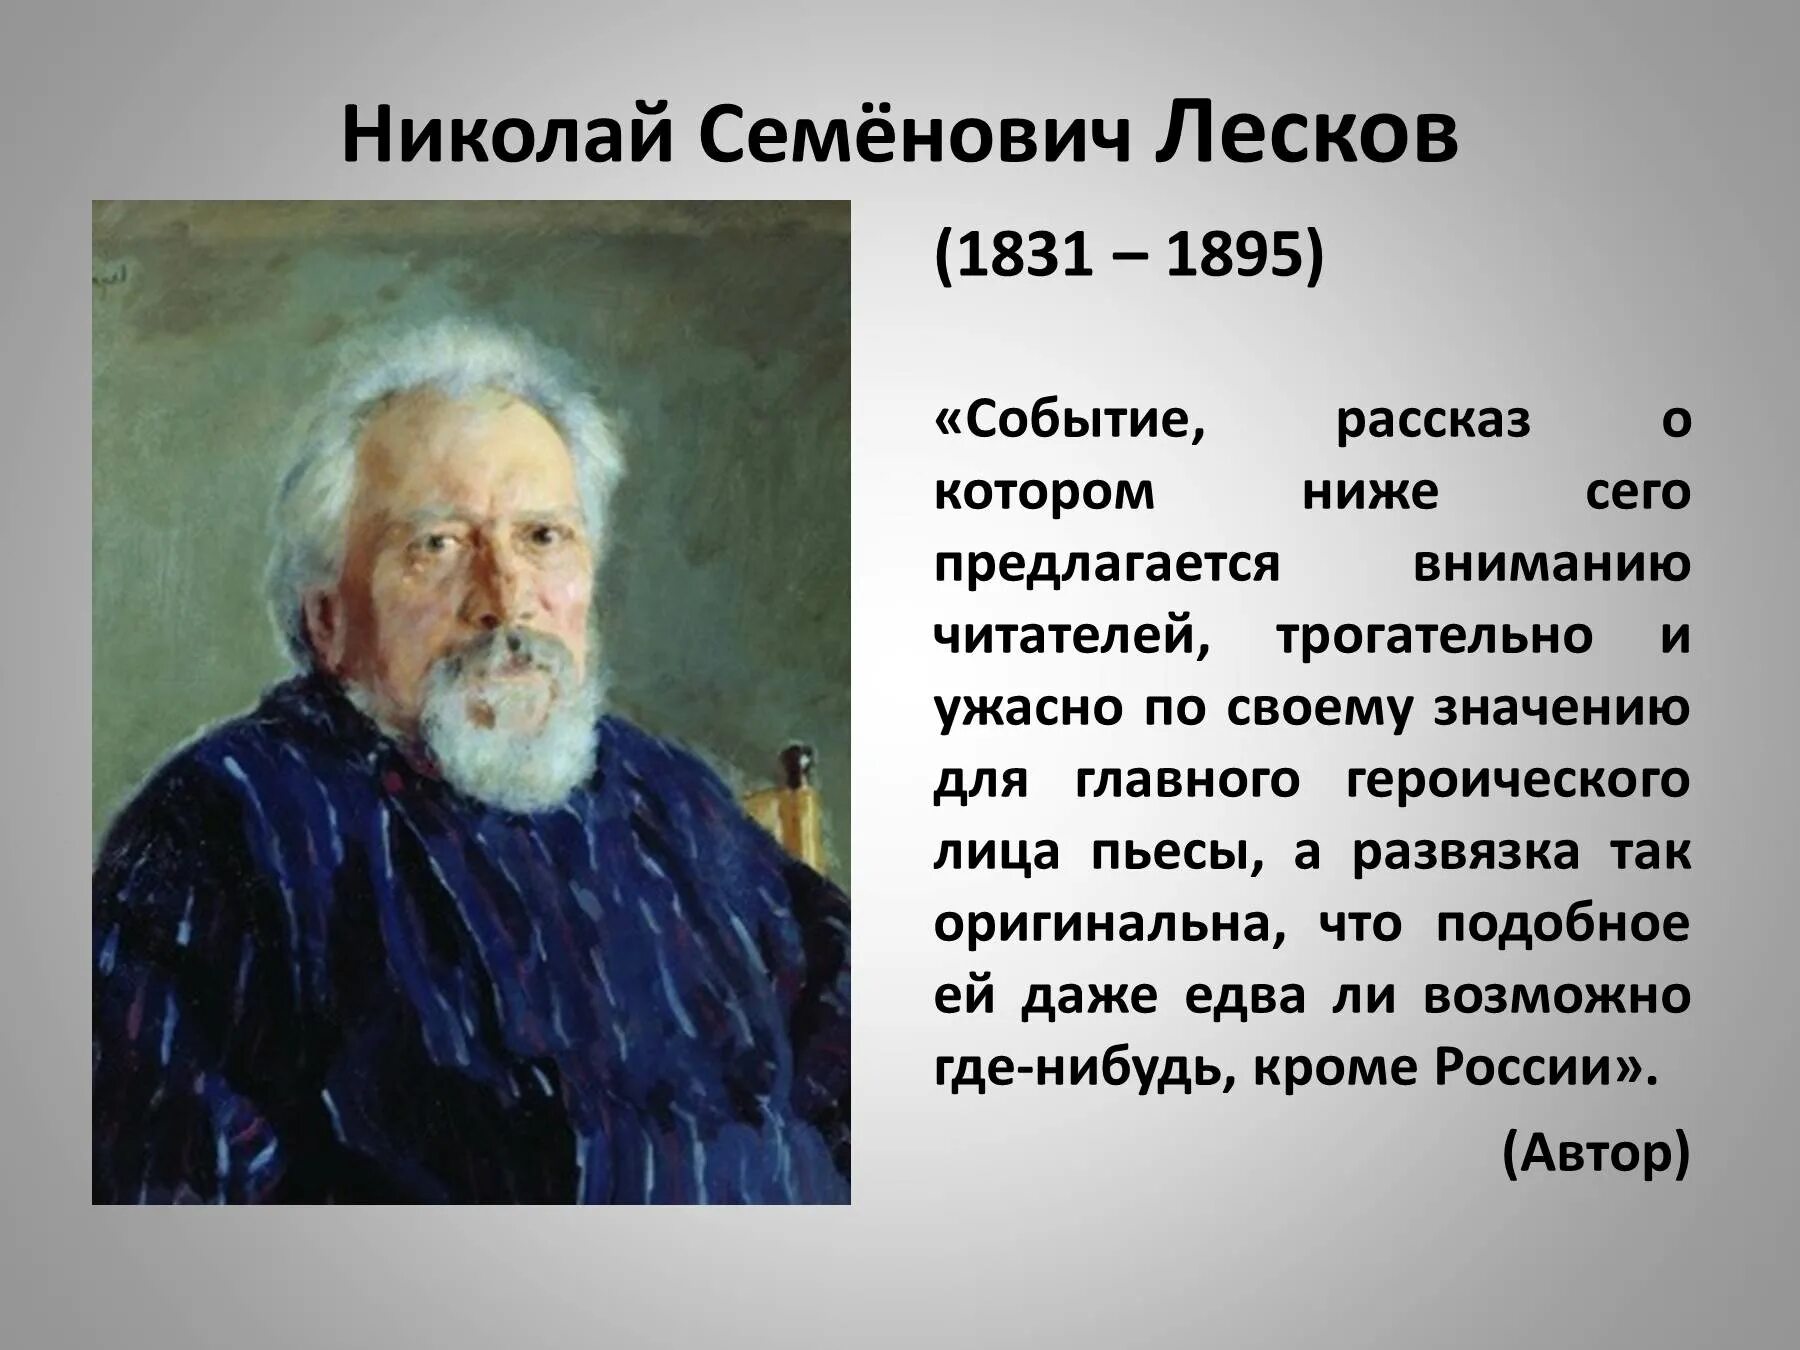 История Николая Семёнович Лескова 1831 - 1895.